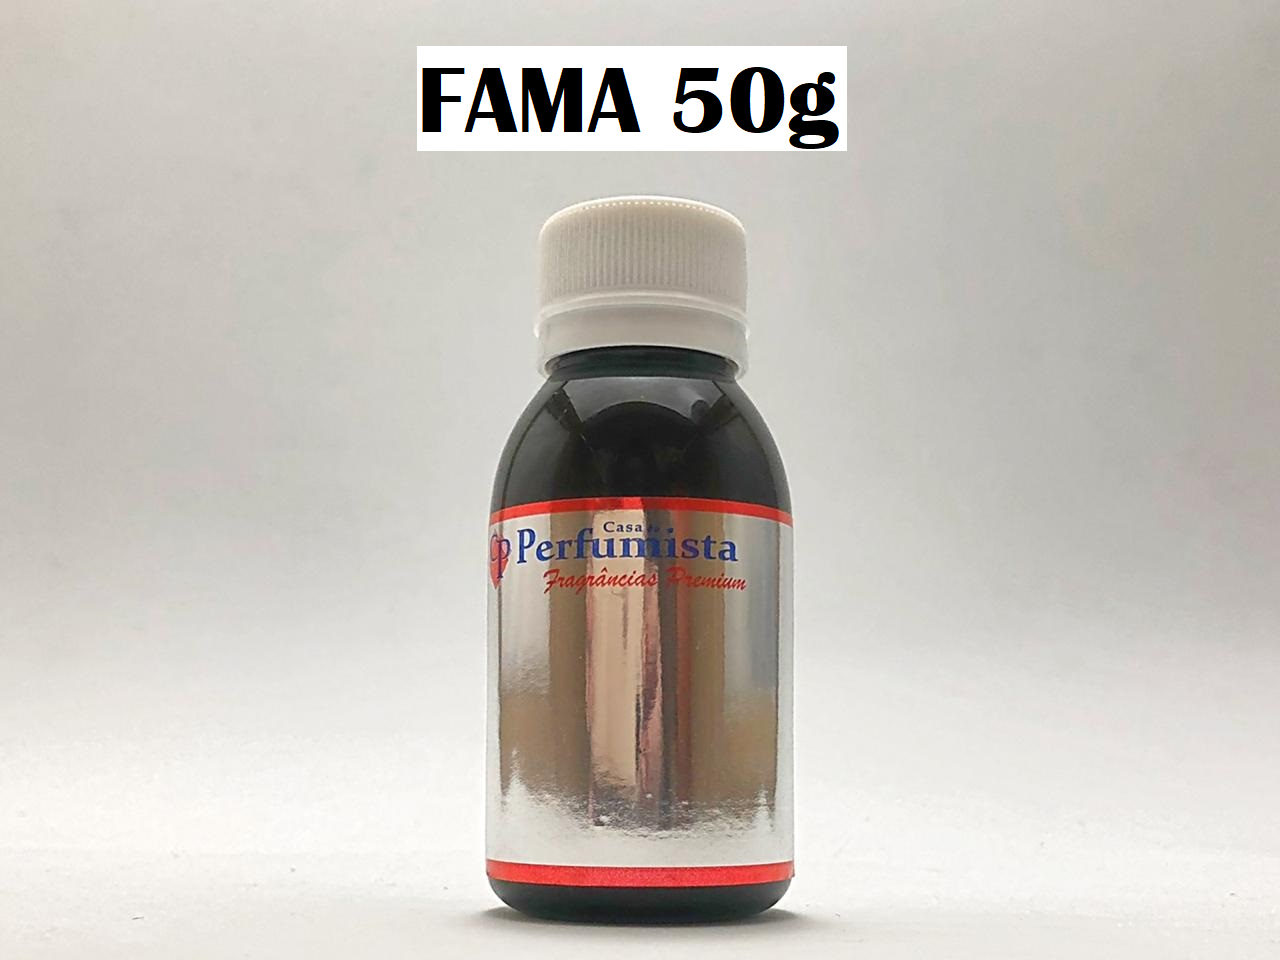 FAMA 50g - Inspiração Fame Paco Rabanne Feminino 